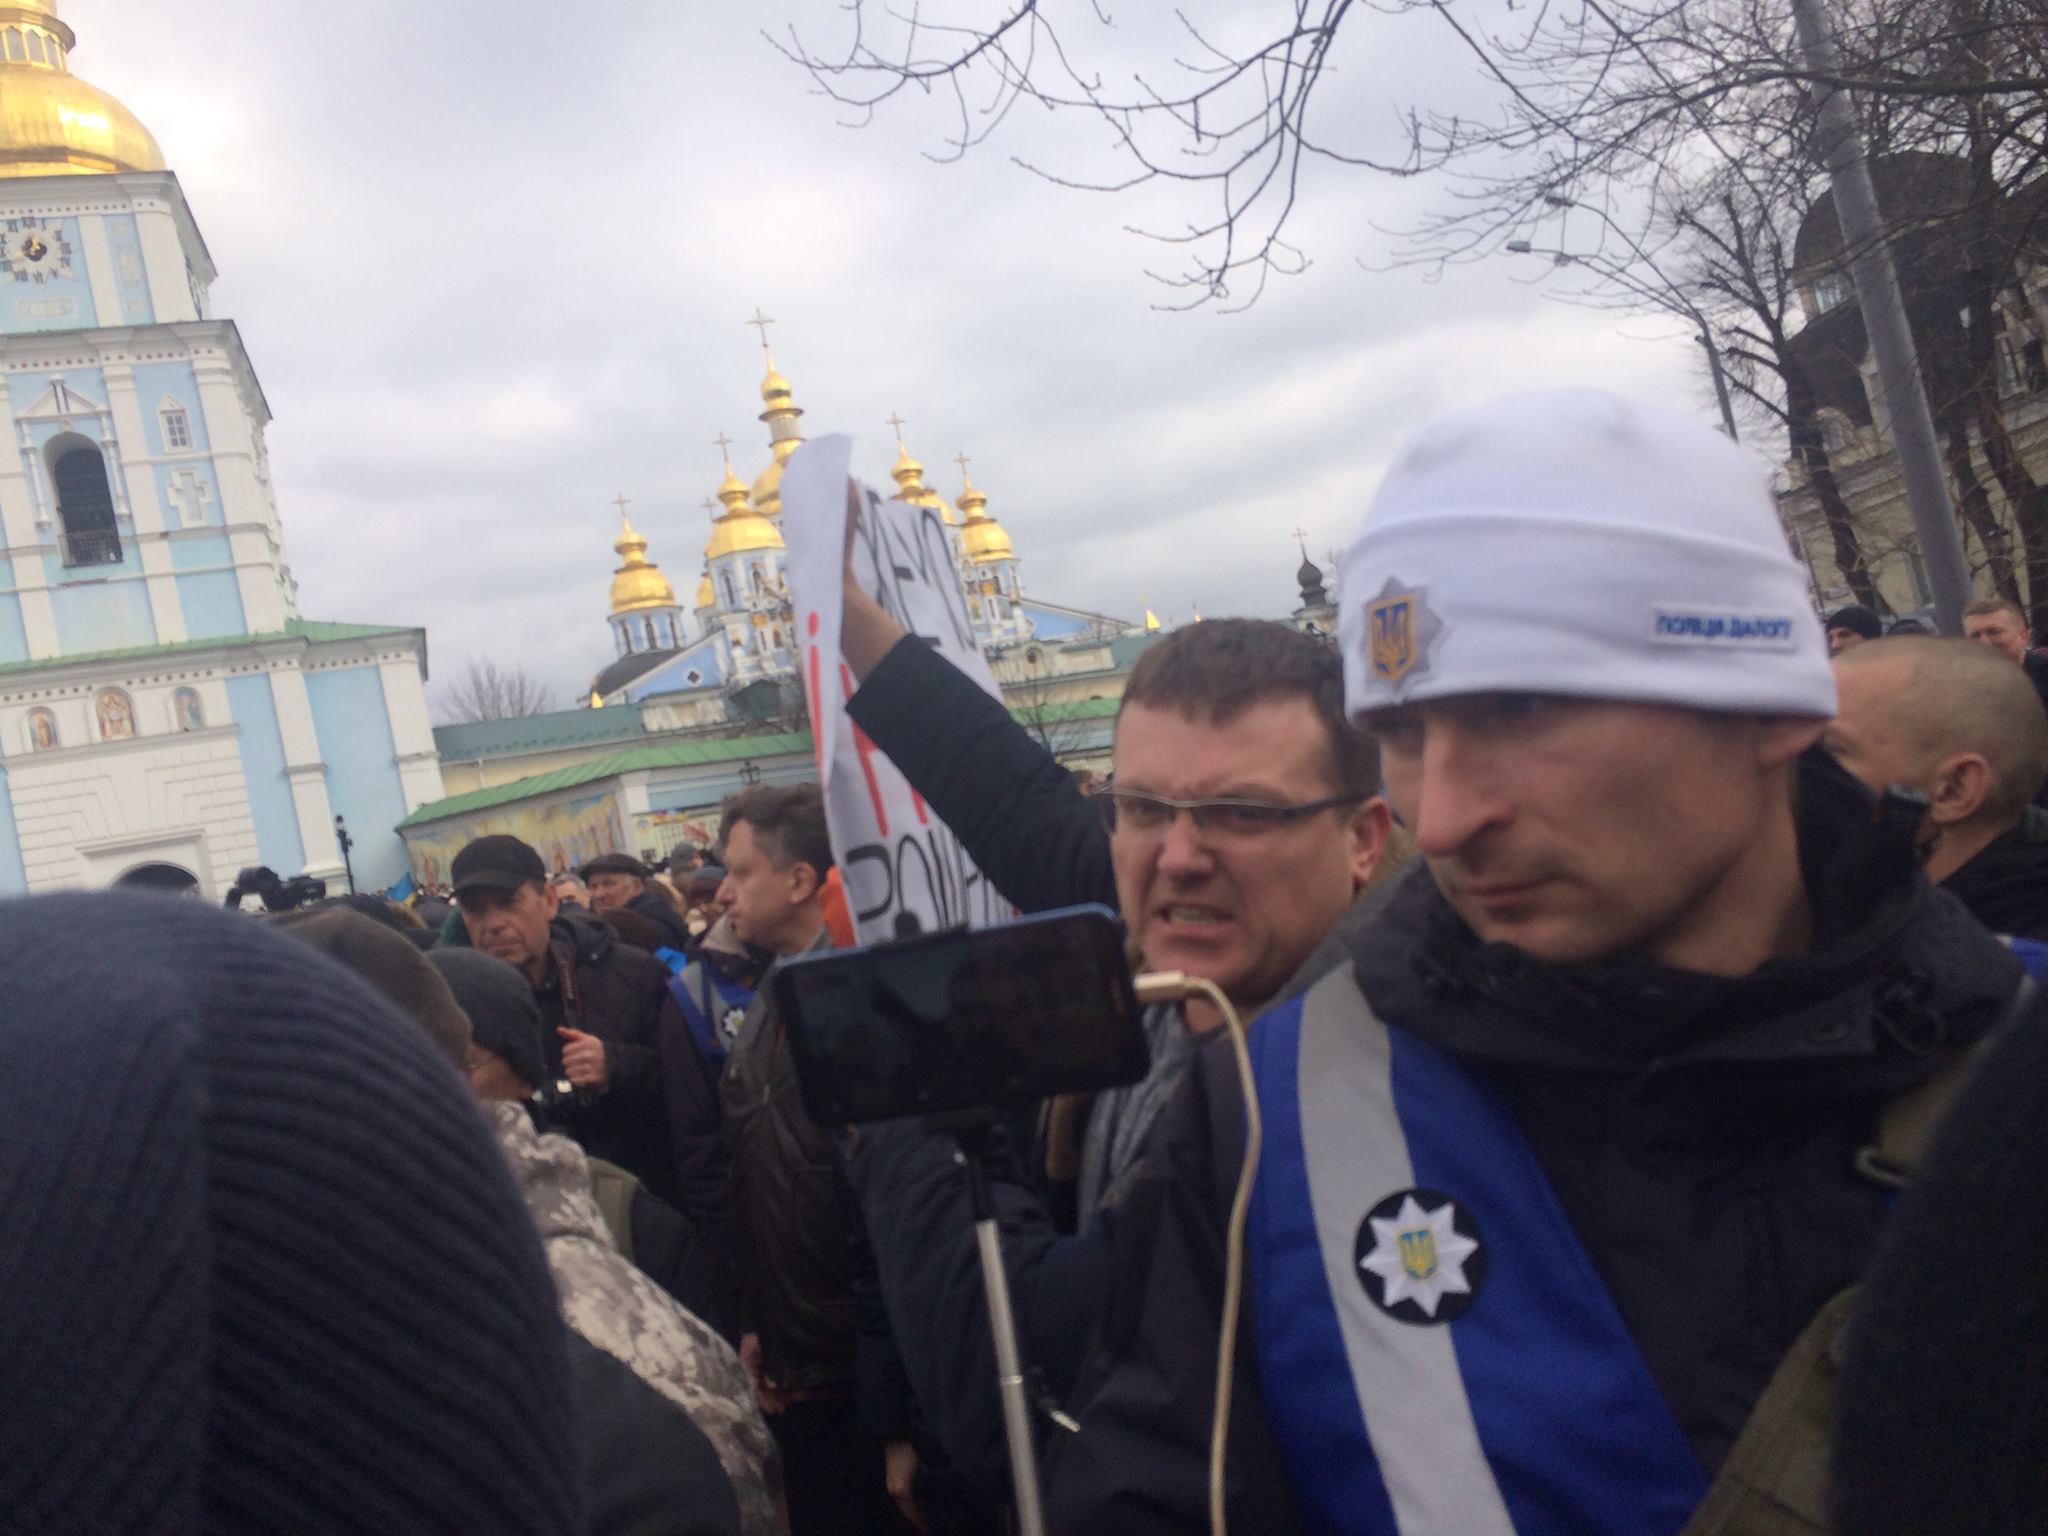 Порошенко выступал в Киеве под выкрики и стычки в толпе: видео